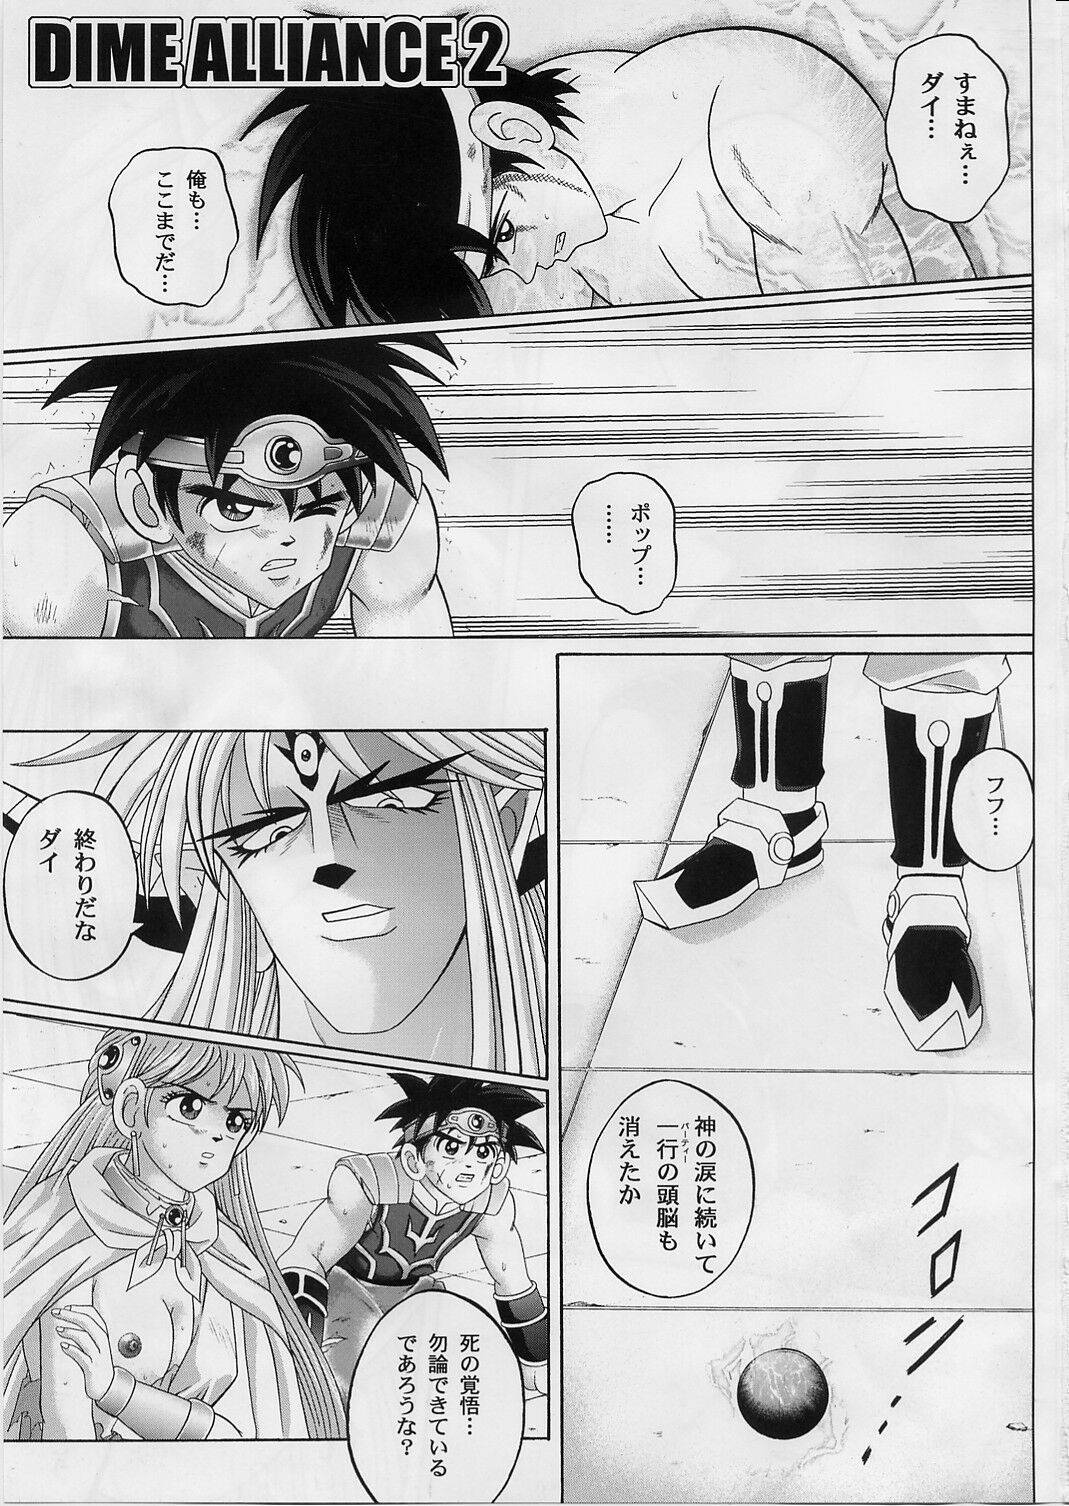 [Cyclone (Izumi, Reizei)] DIME ALLIANCE 2 (Dragon Quest Dai no Daibouken) page 2 full